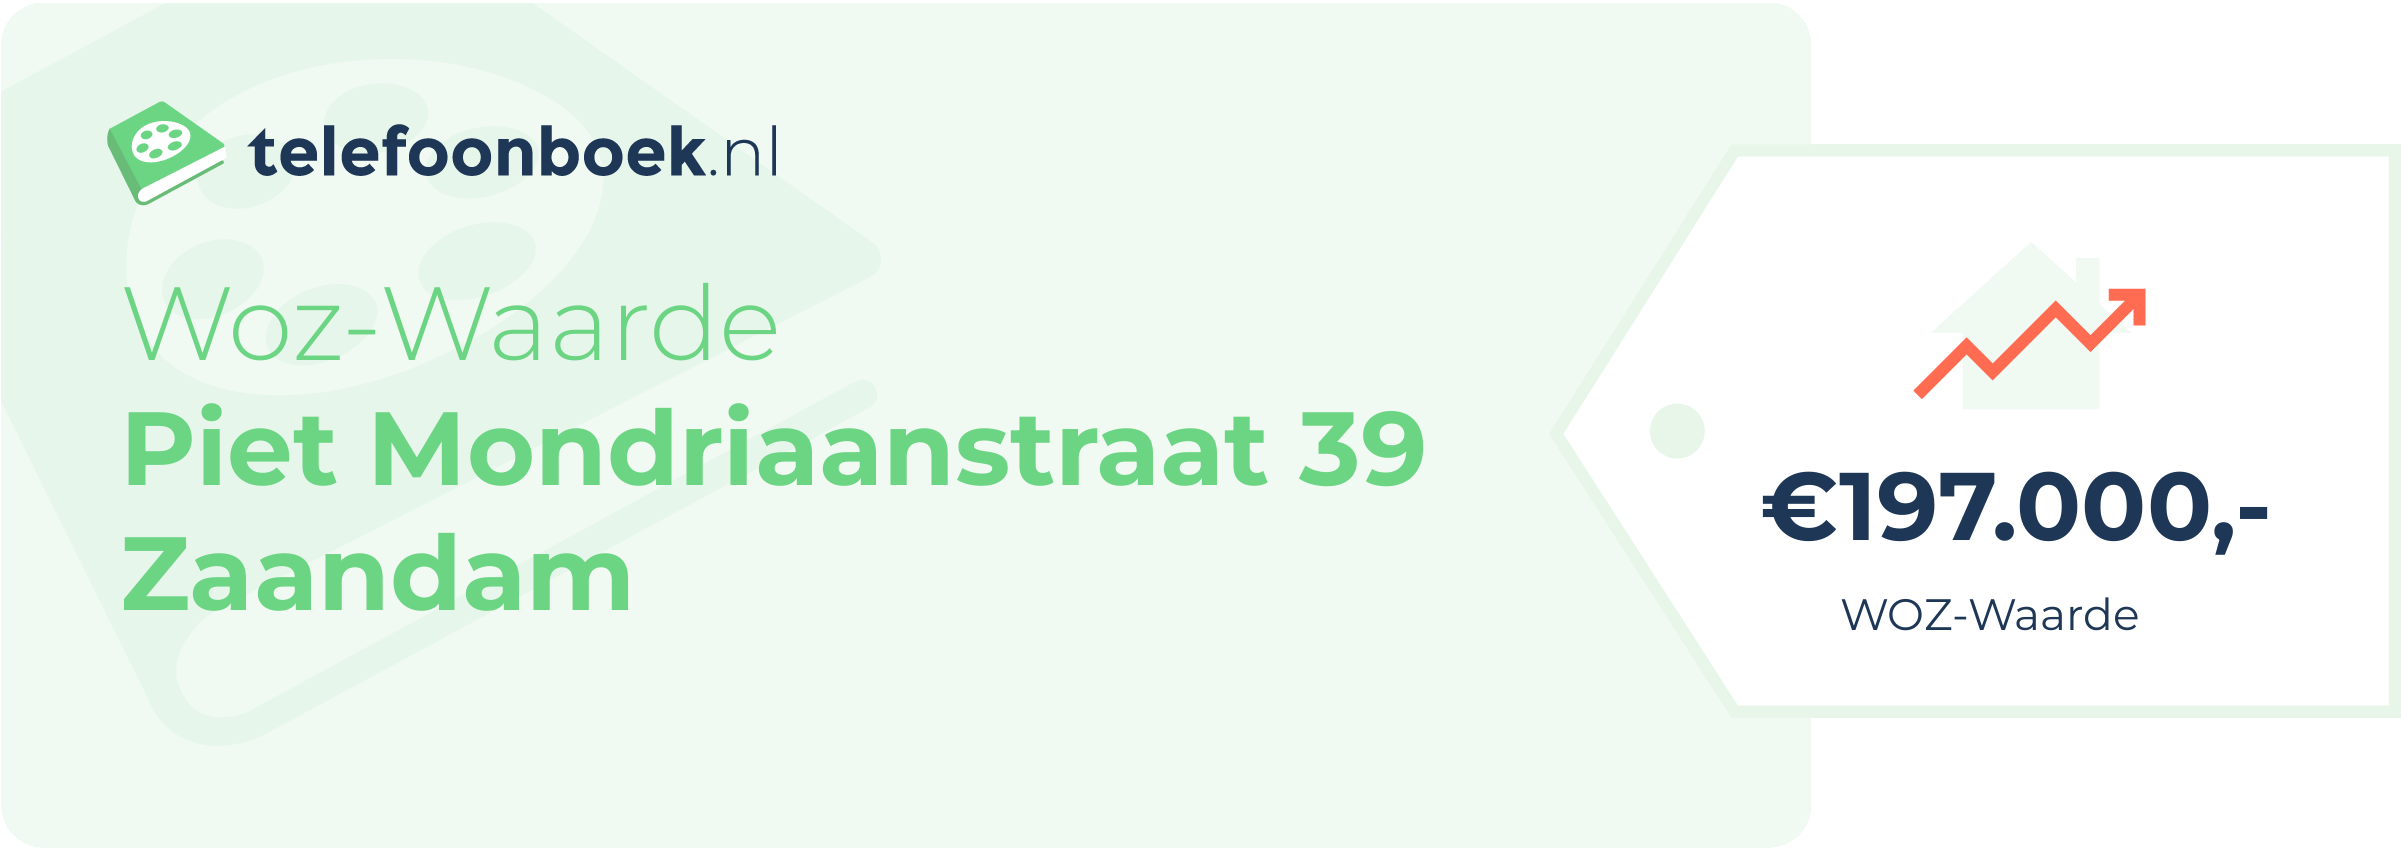 WOZ-waarde Piet Mondriaanstraat 39 Zaandam